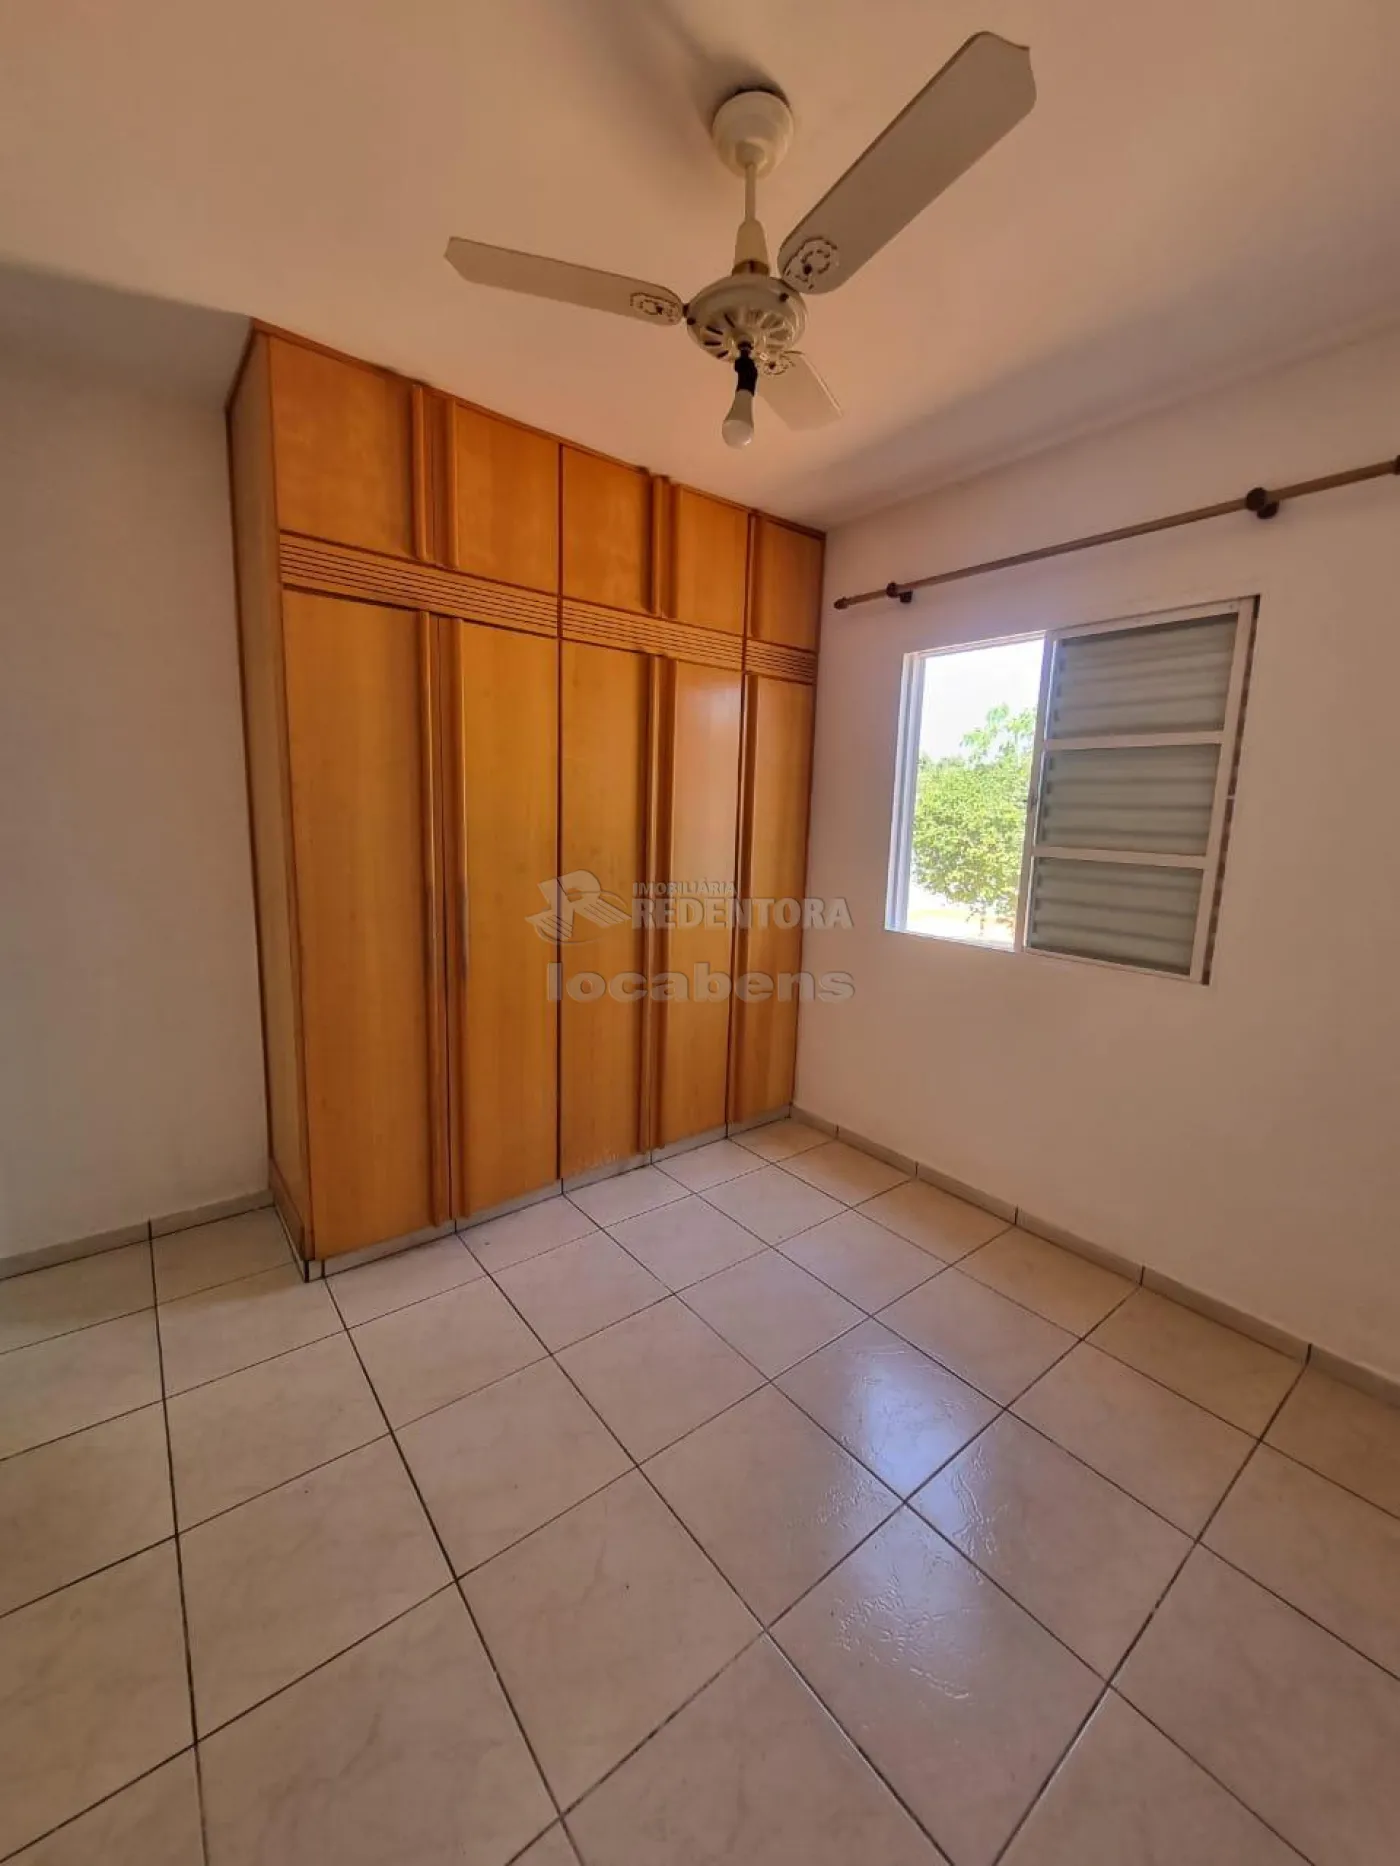 Alugar Casa / Condomínio em São José do Rio Preto apenas R$ 1.800,00 - Foto 5